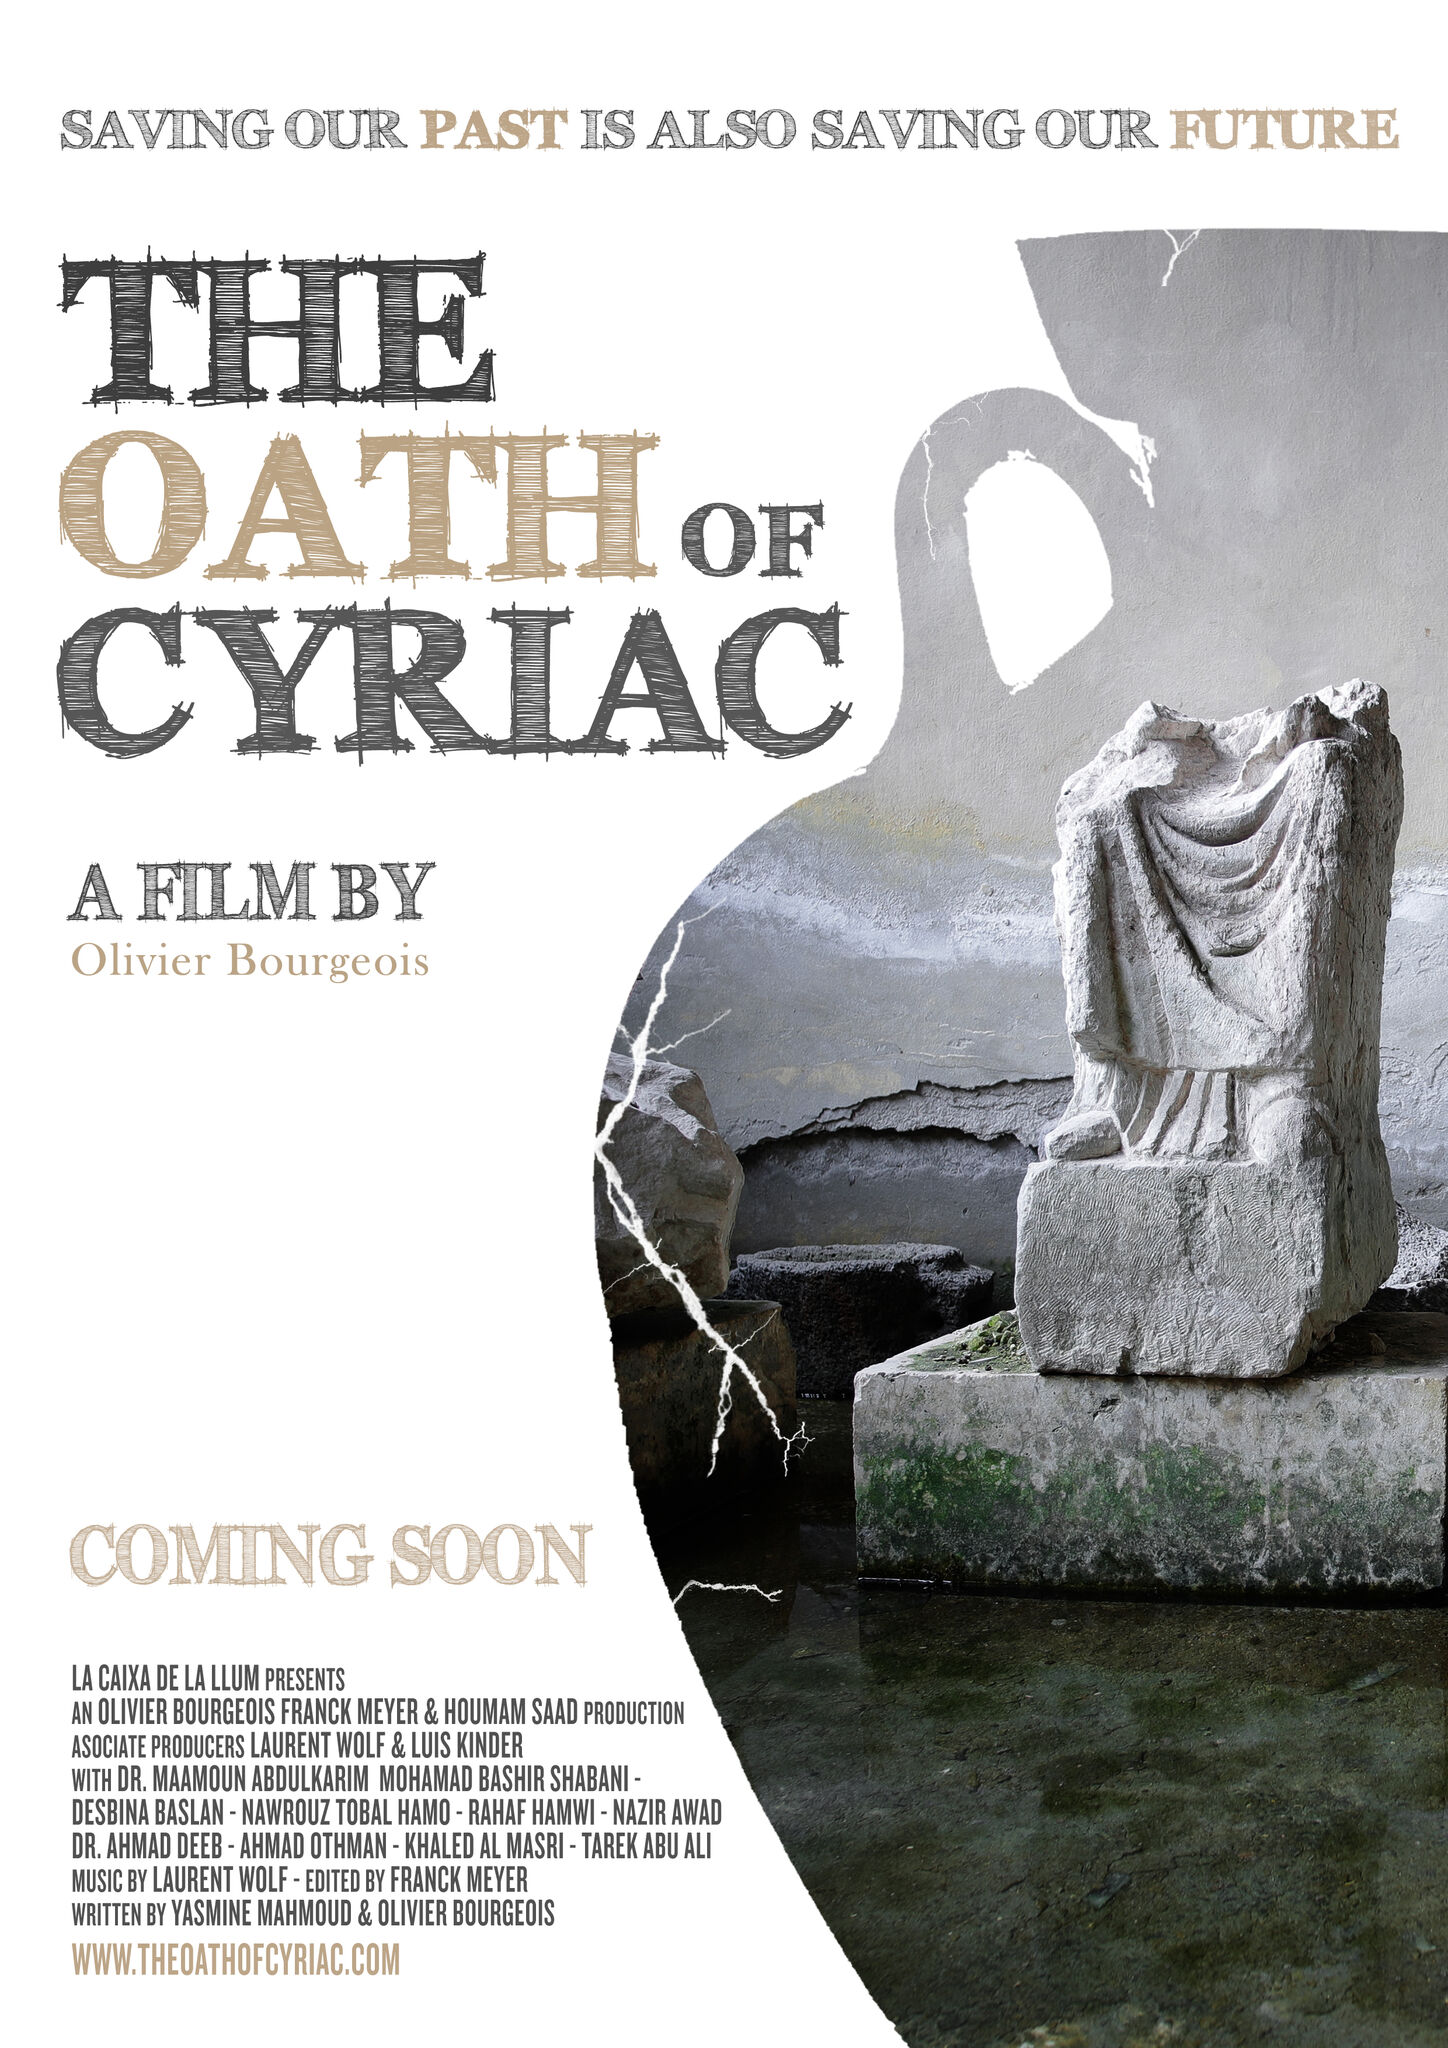 THE OATH OF CYRIAC